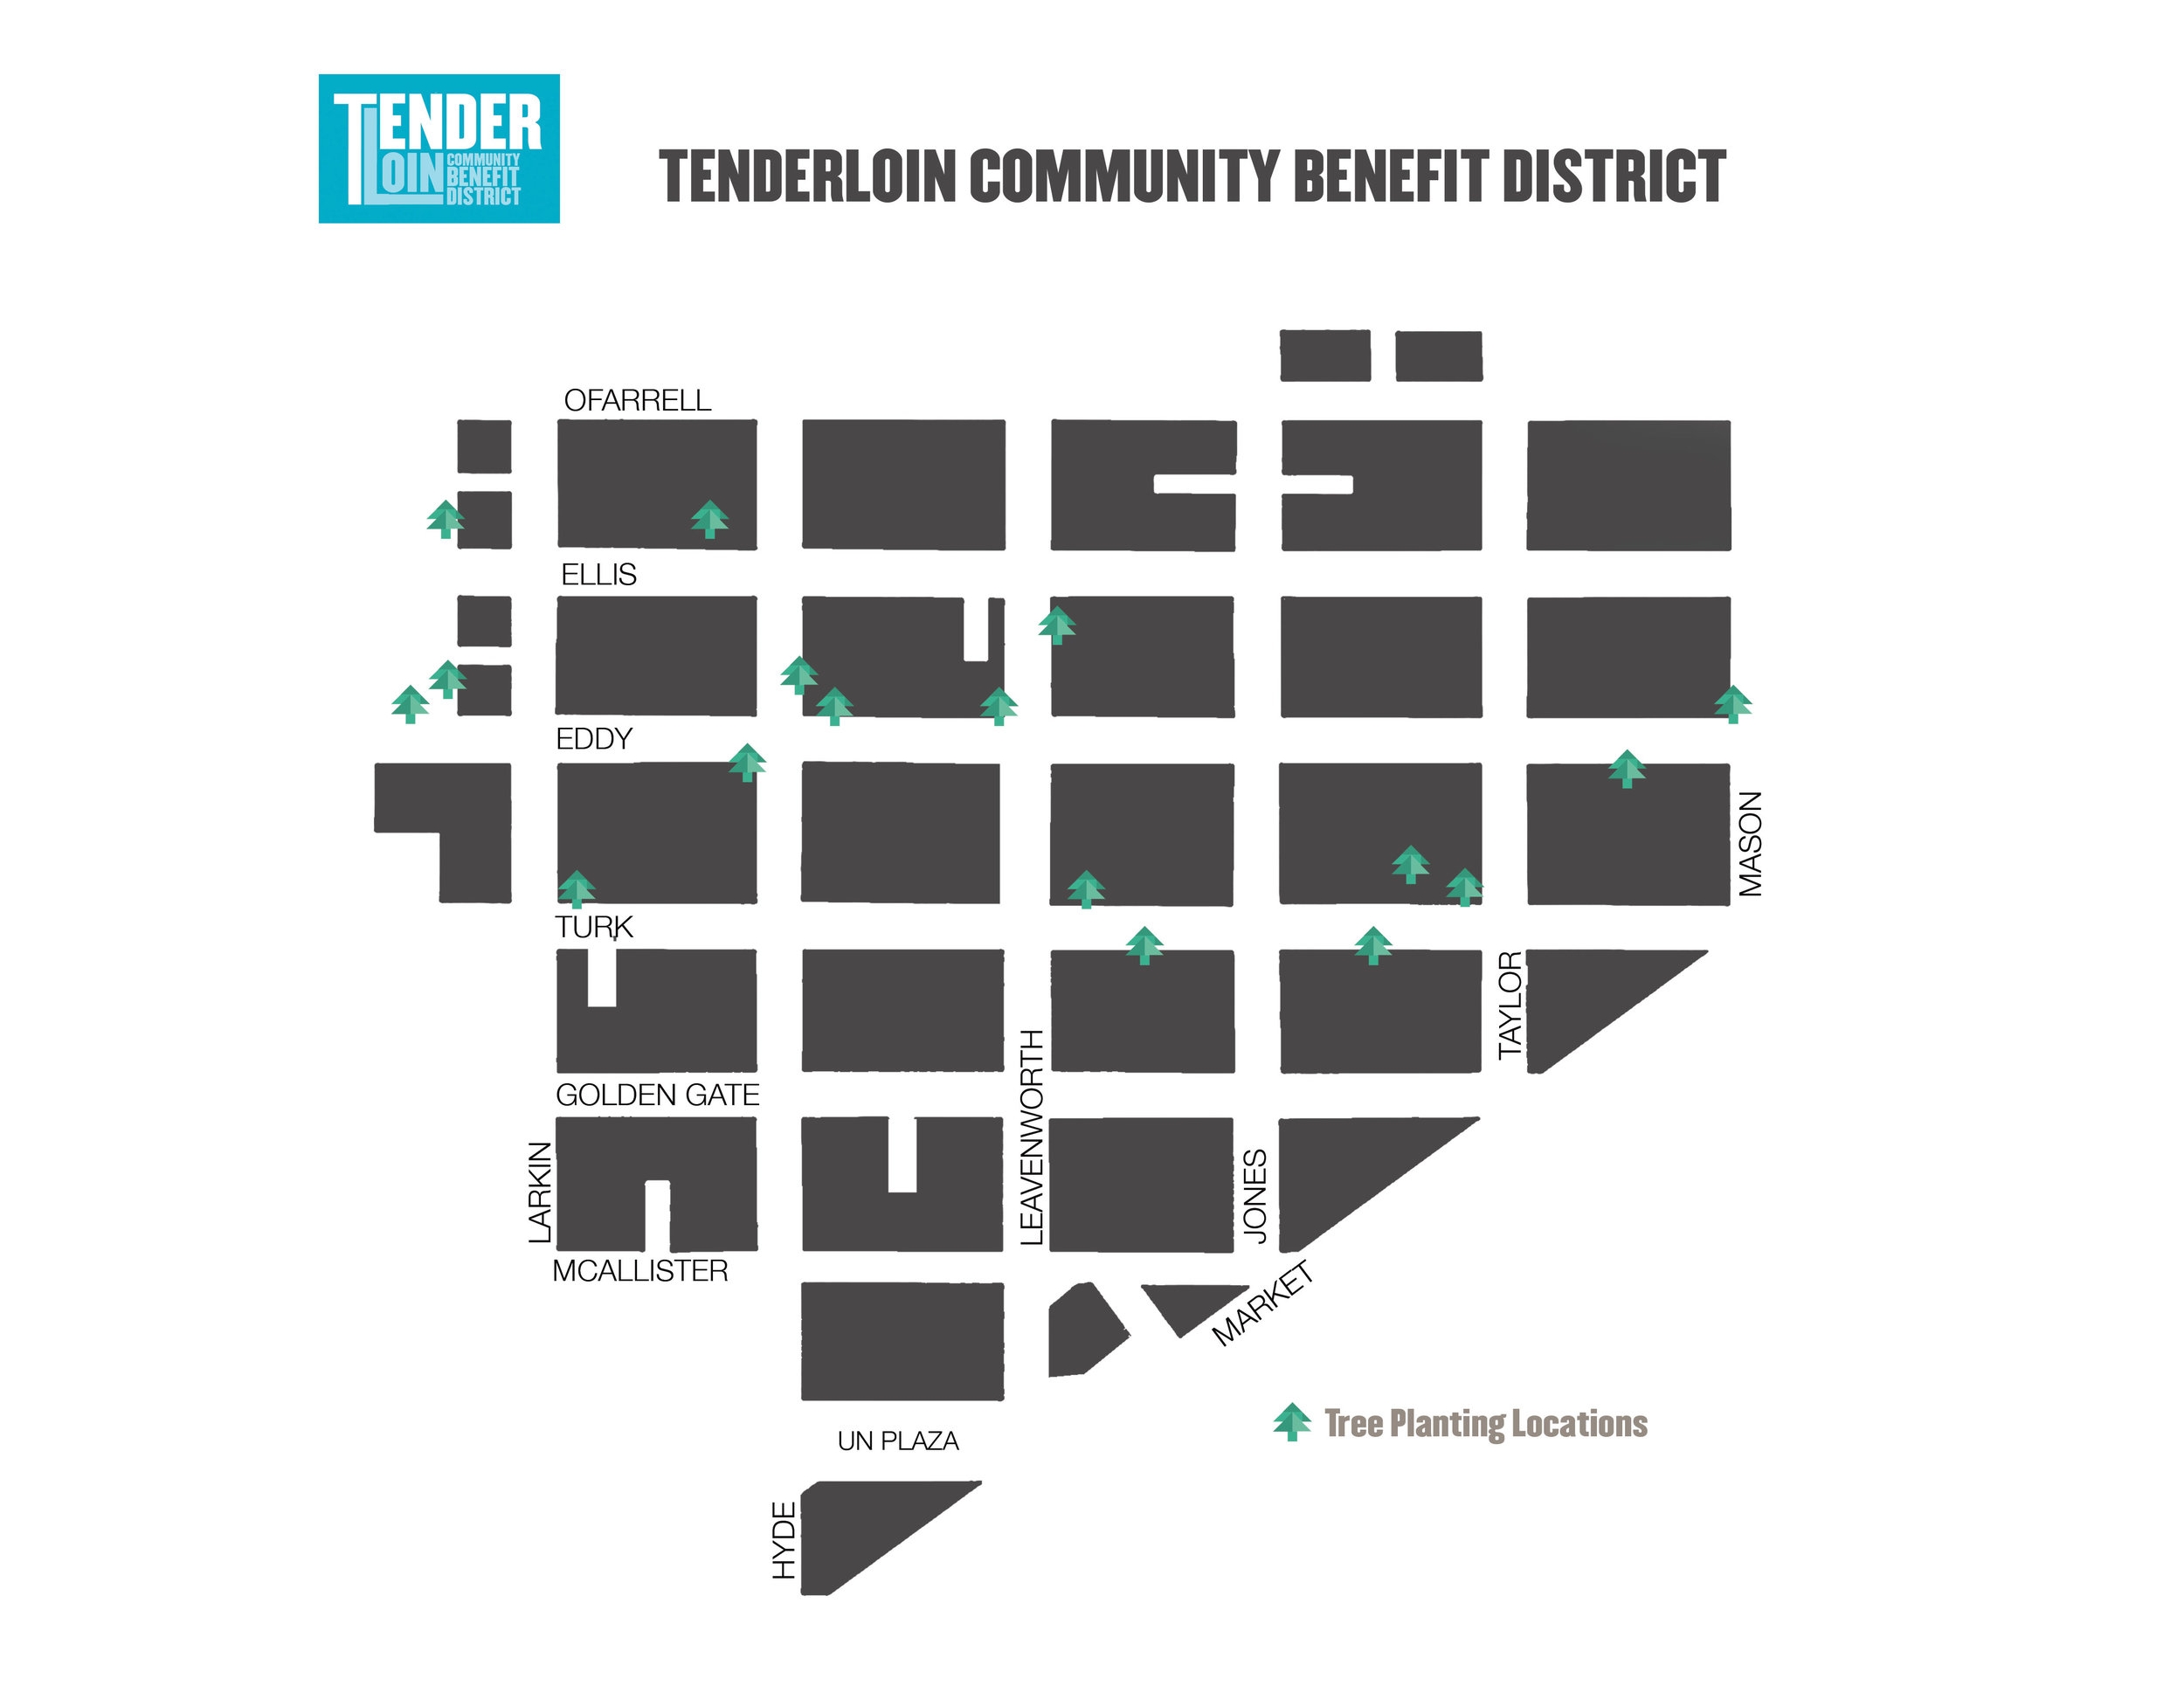 Tenderloin-tree-locations.jpg